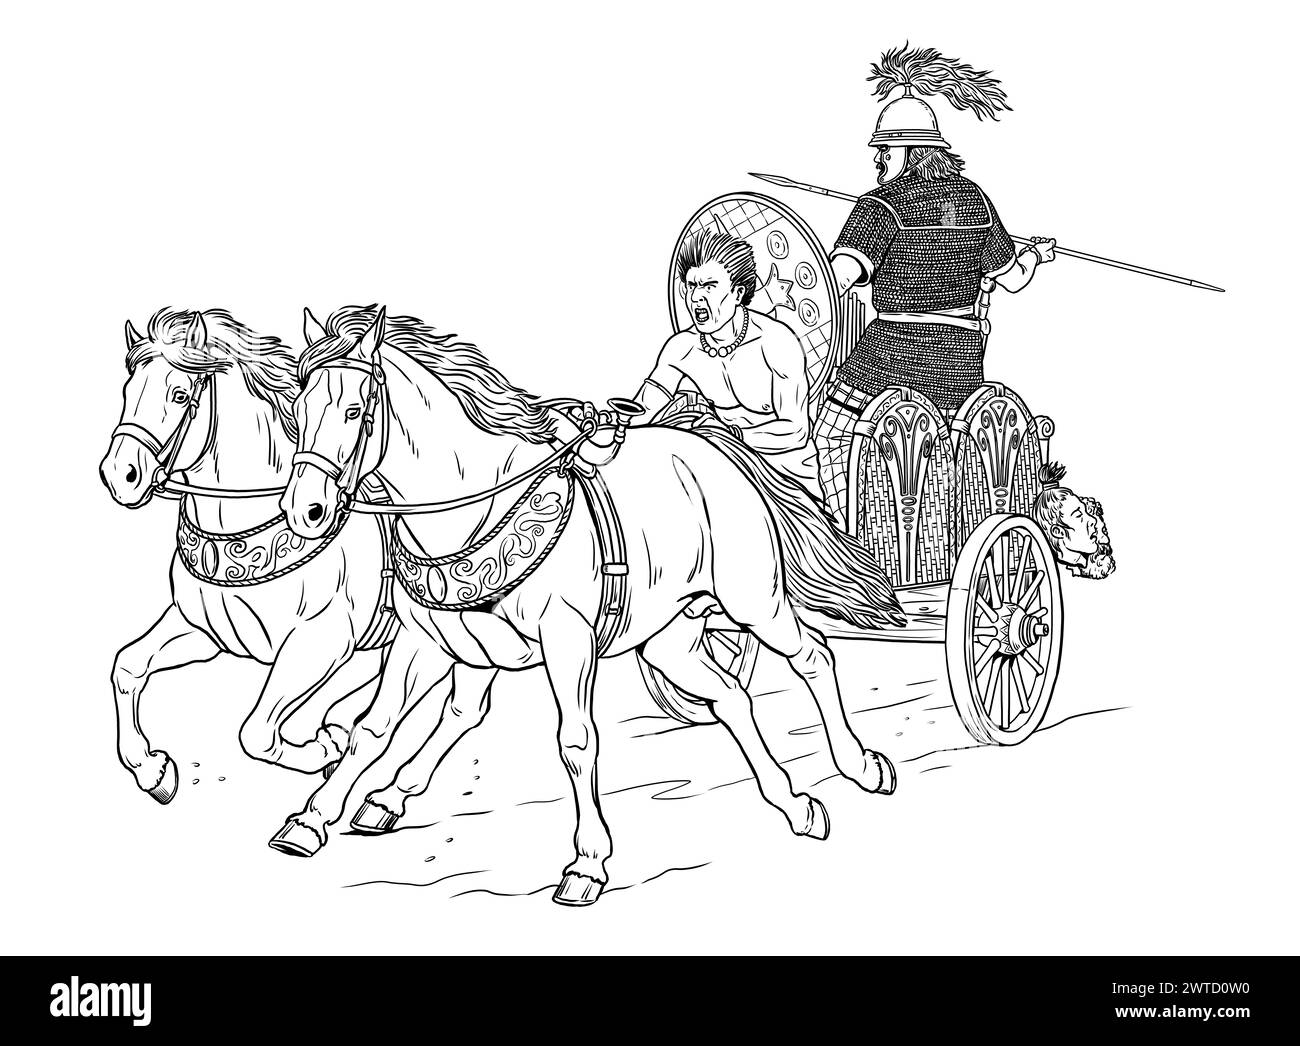 Ein alter keltischer Wagen beim Angriff. Historische Zeichnung. Stockfoto